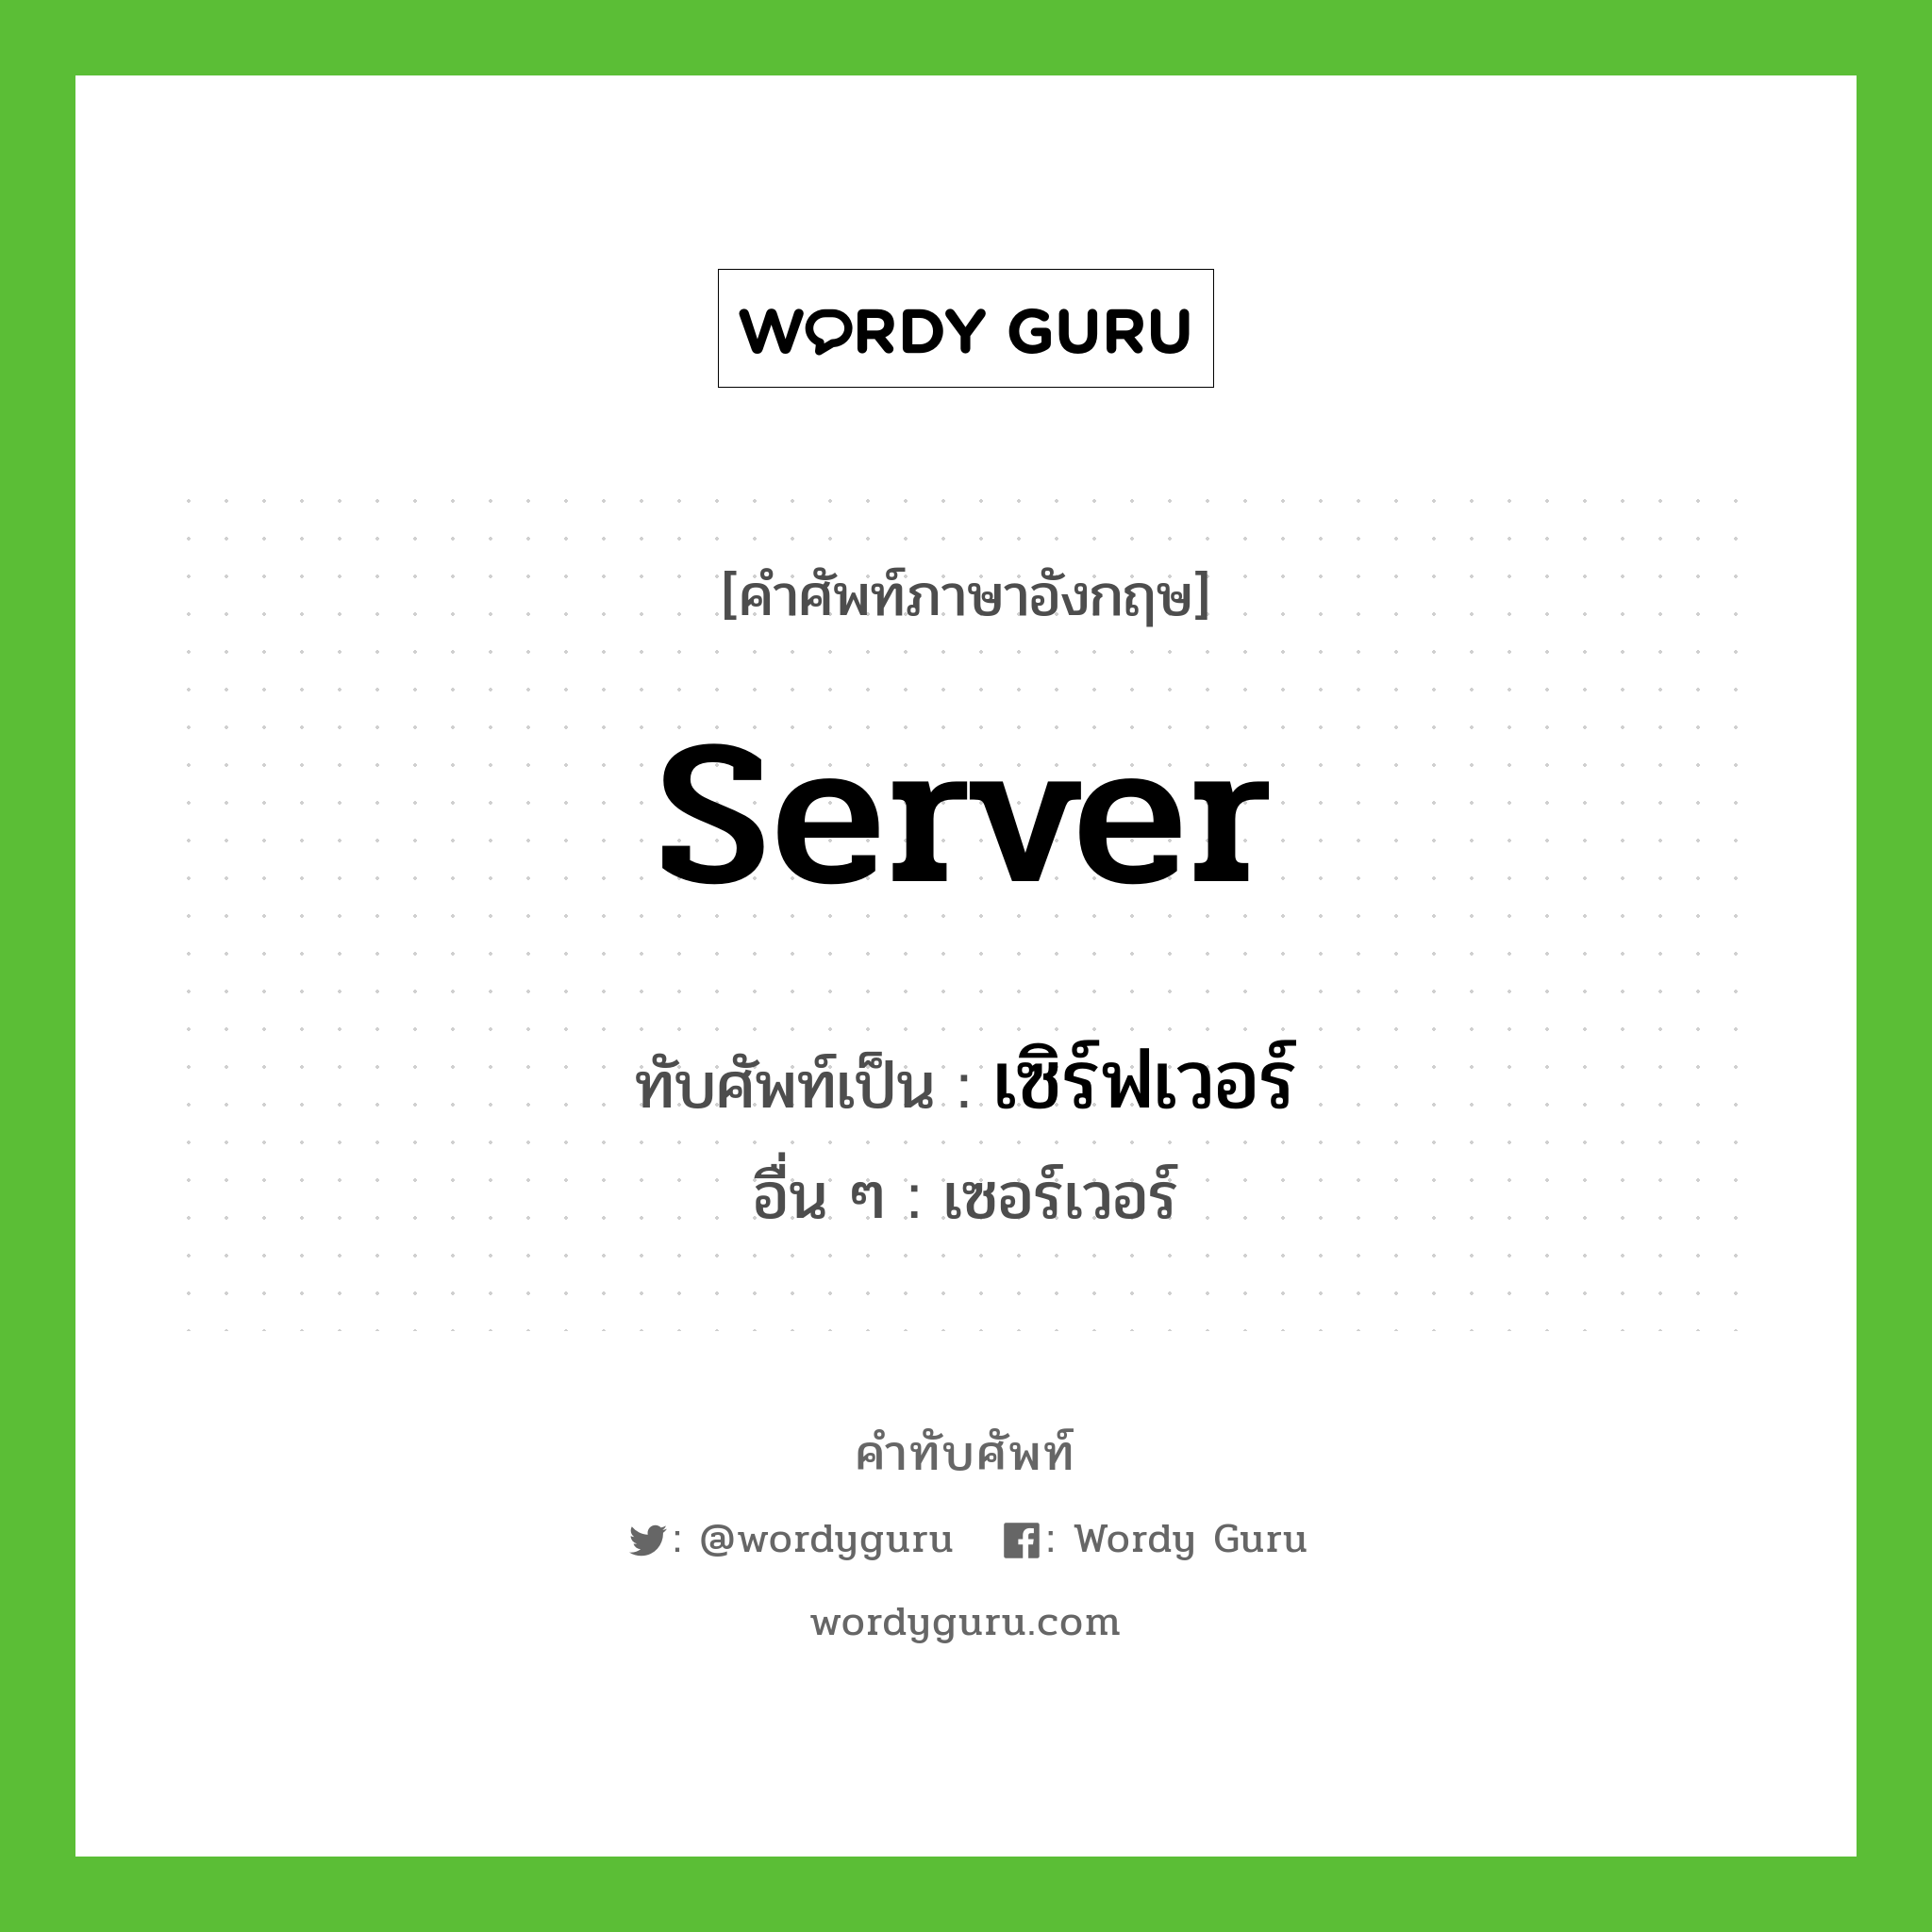 server เขียนเป็นคำไทยว่าอะไร?, คำศัพท์ภาษาอังกฤษ server ทับศัพท์เป็น เซิร์ฟเวอร์ อื่น ๆ เซอร์เวอร์